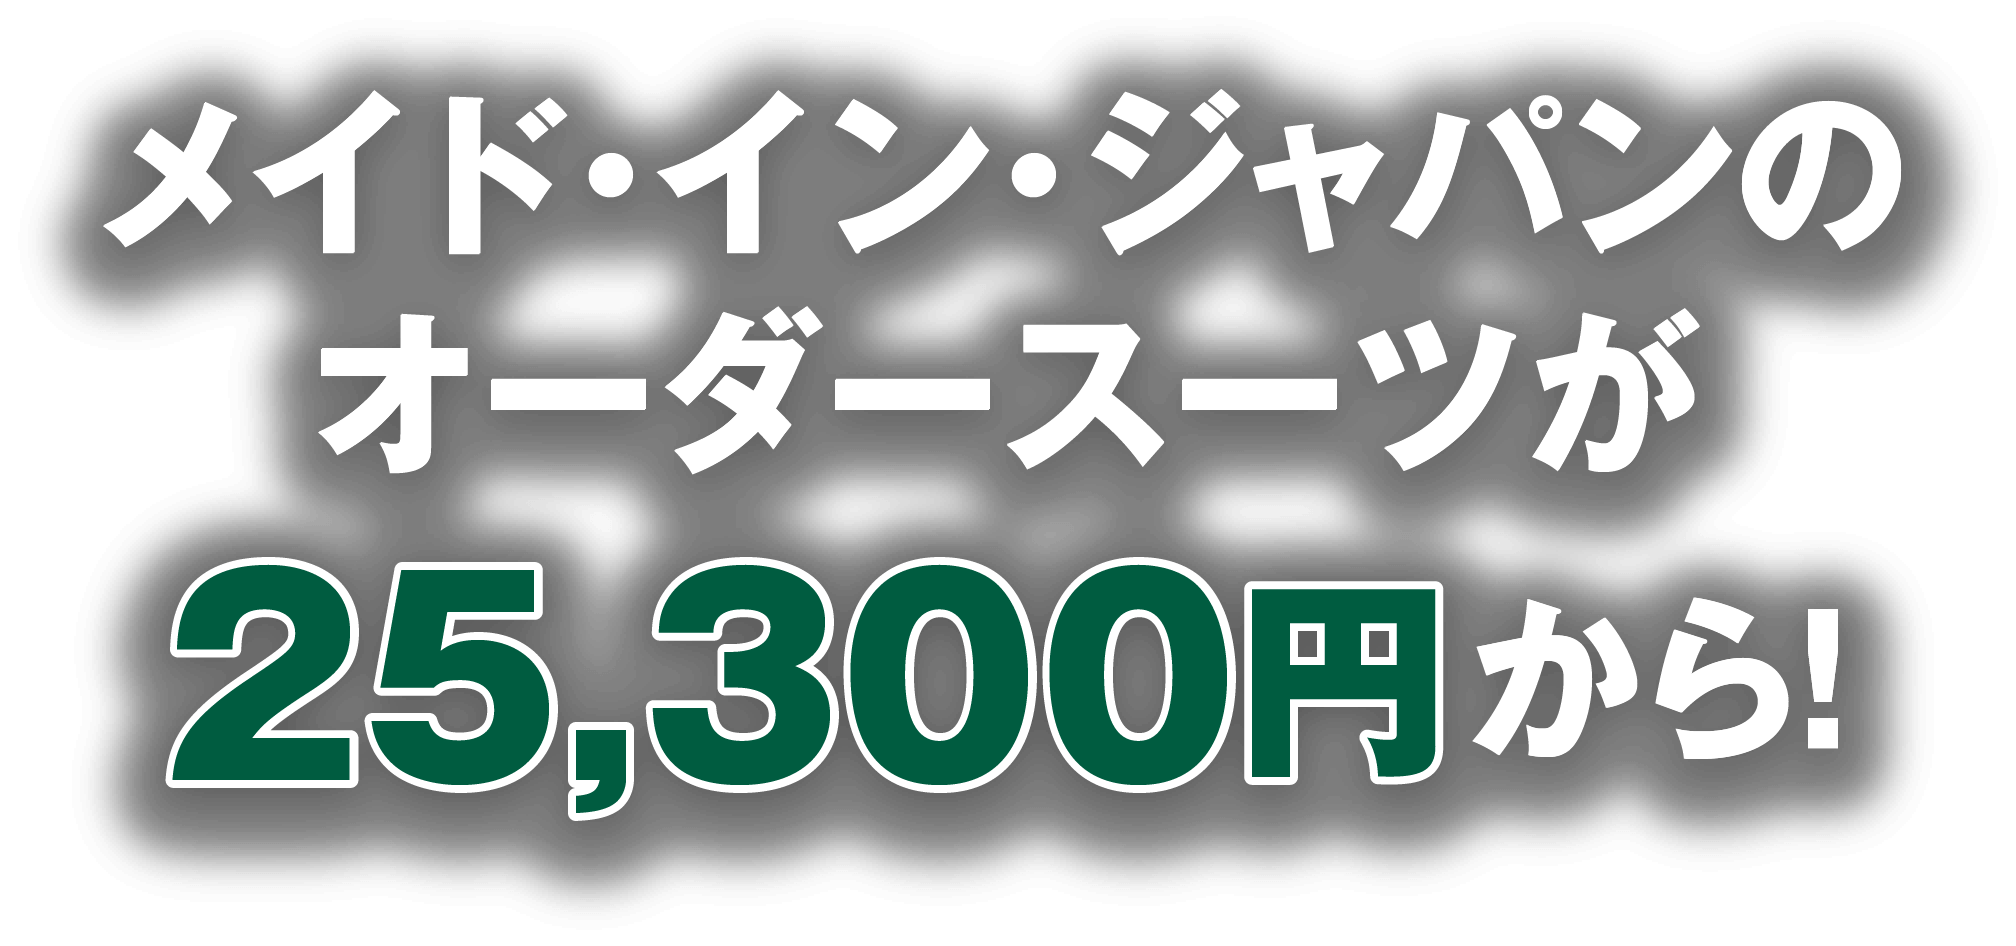 メイド・イン・ジャパンのオーダースーツが25,300円から!